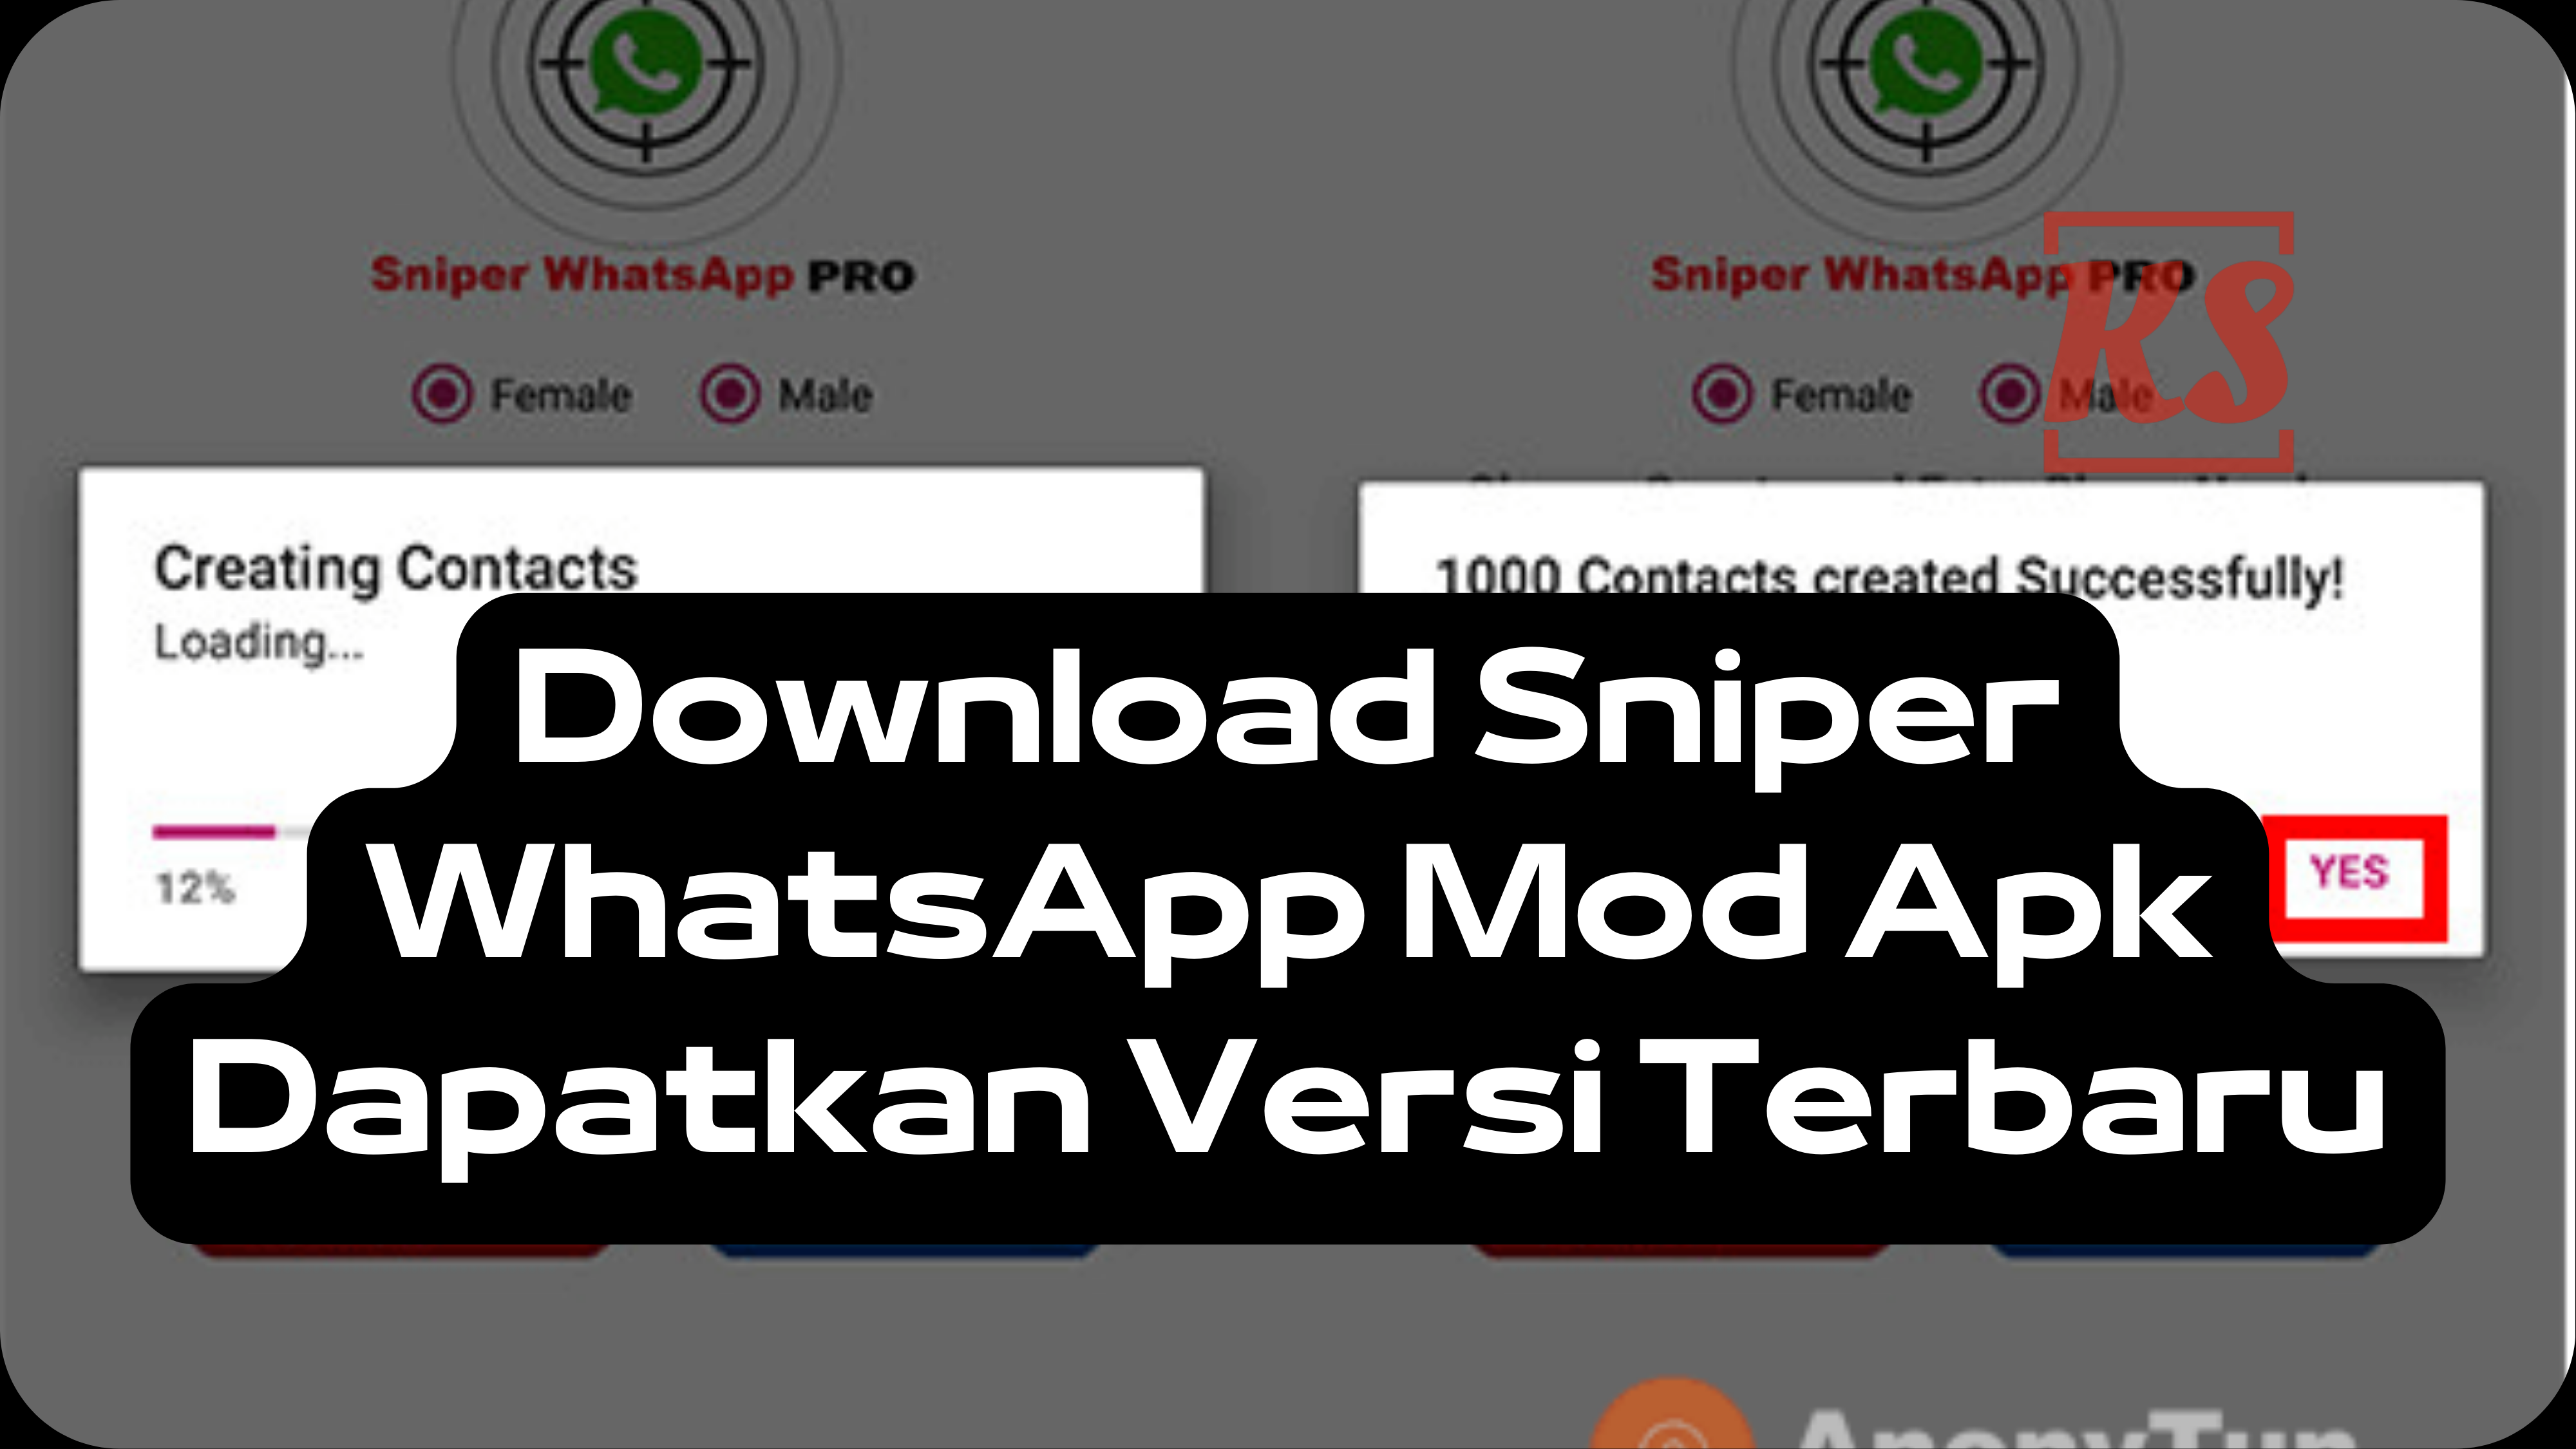 Download Sniper WhatsApp Mod Apk Dapatkan Versi Terbaru